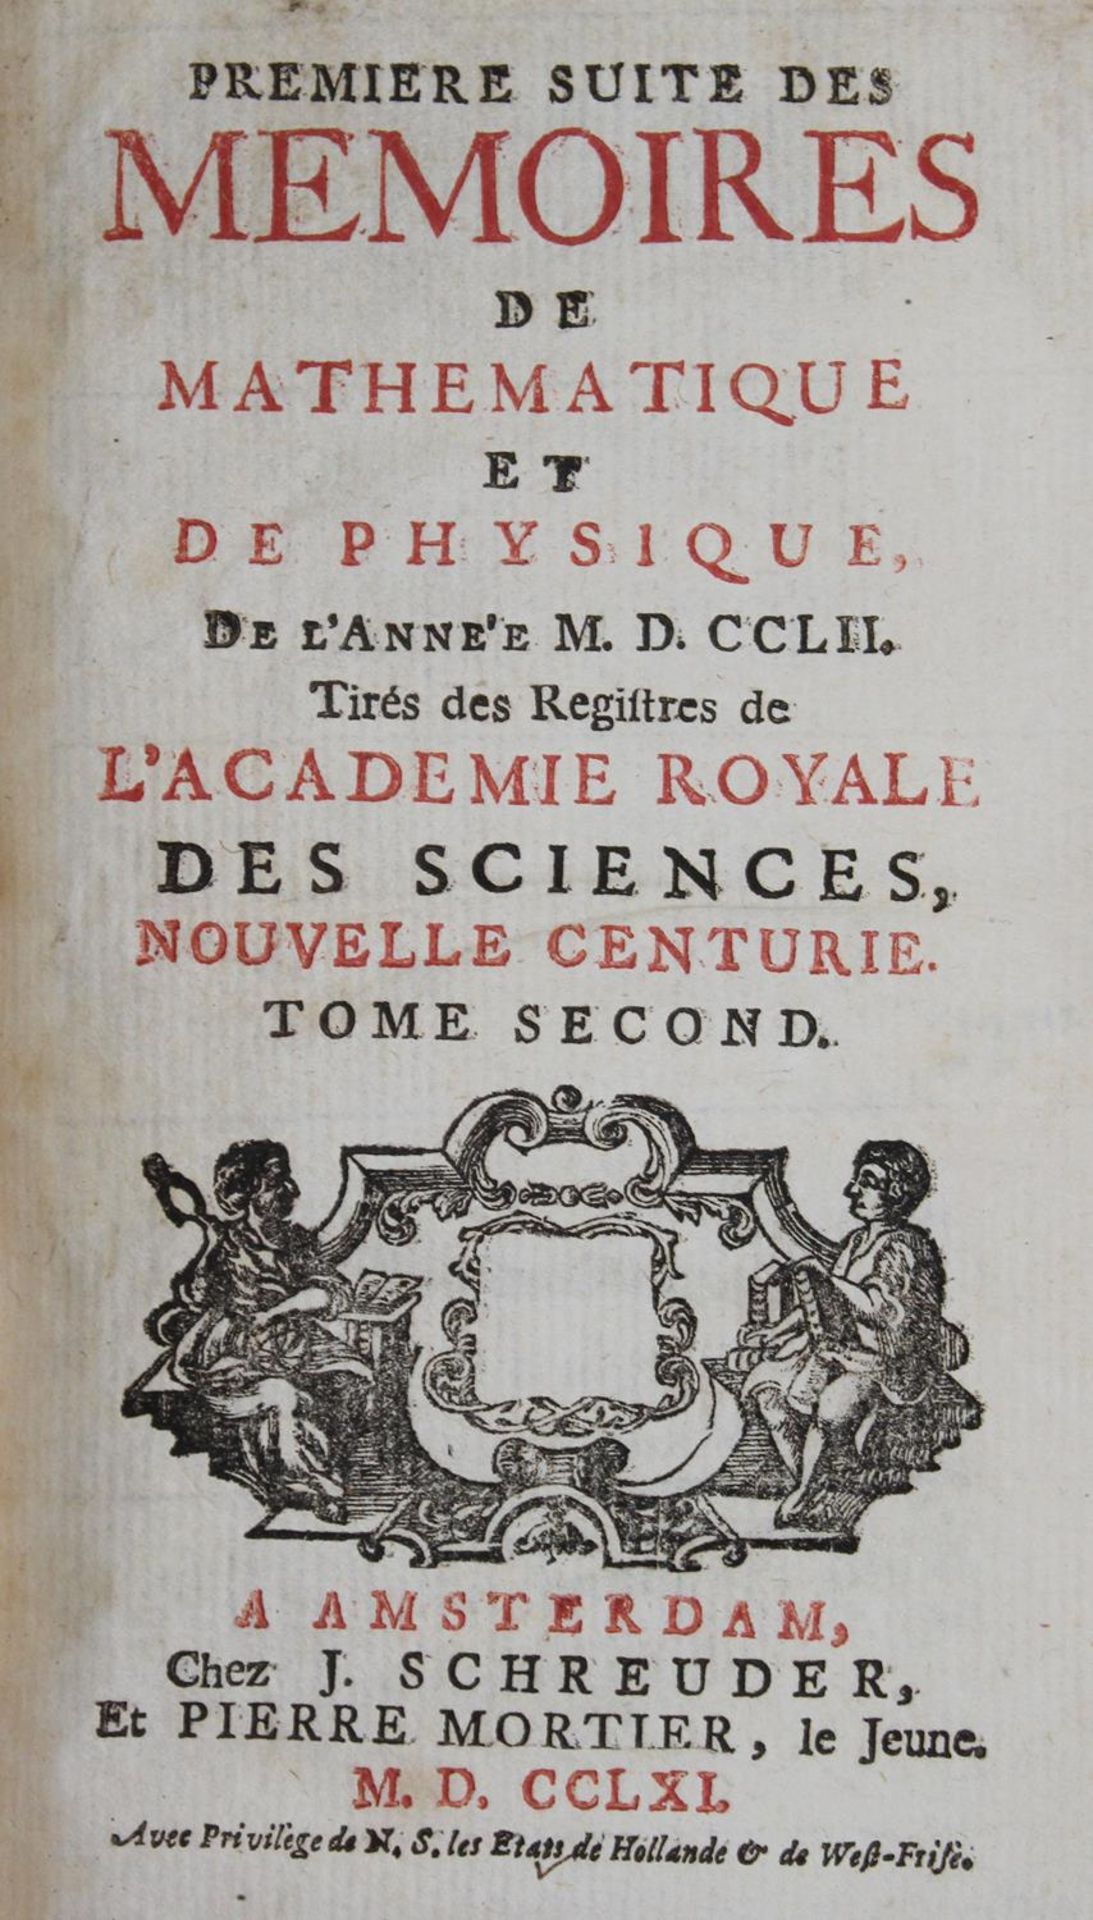 Memoires de l'Academie Royale des Sciences.